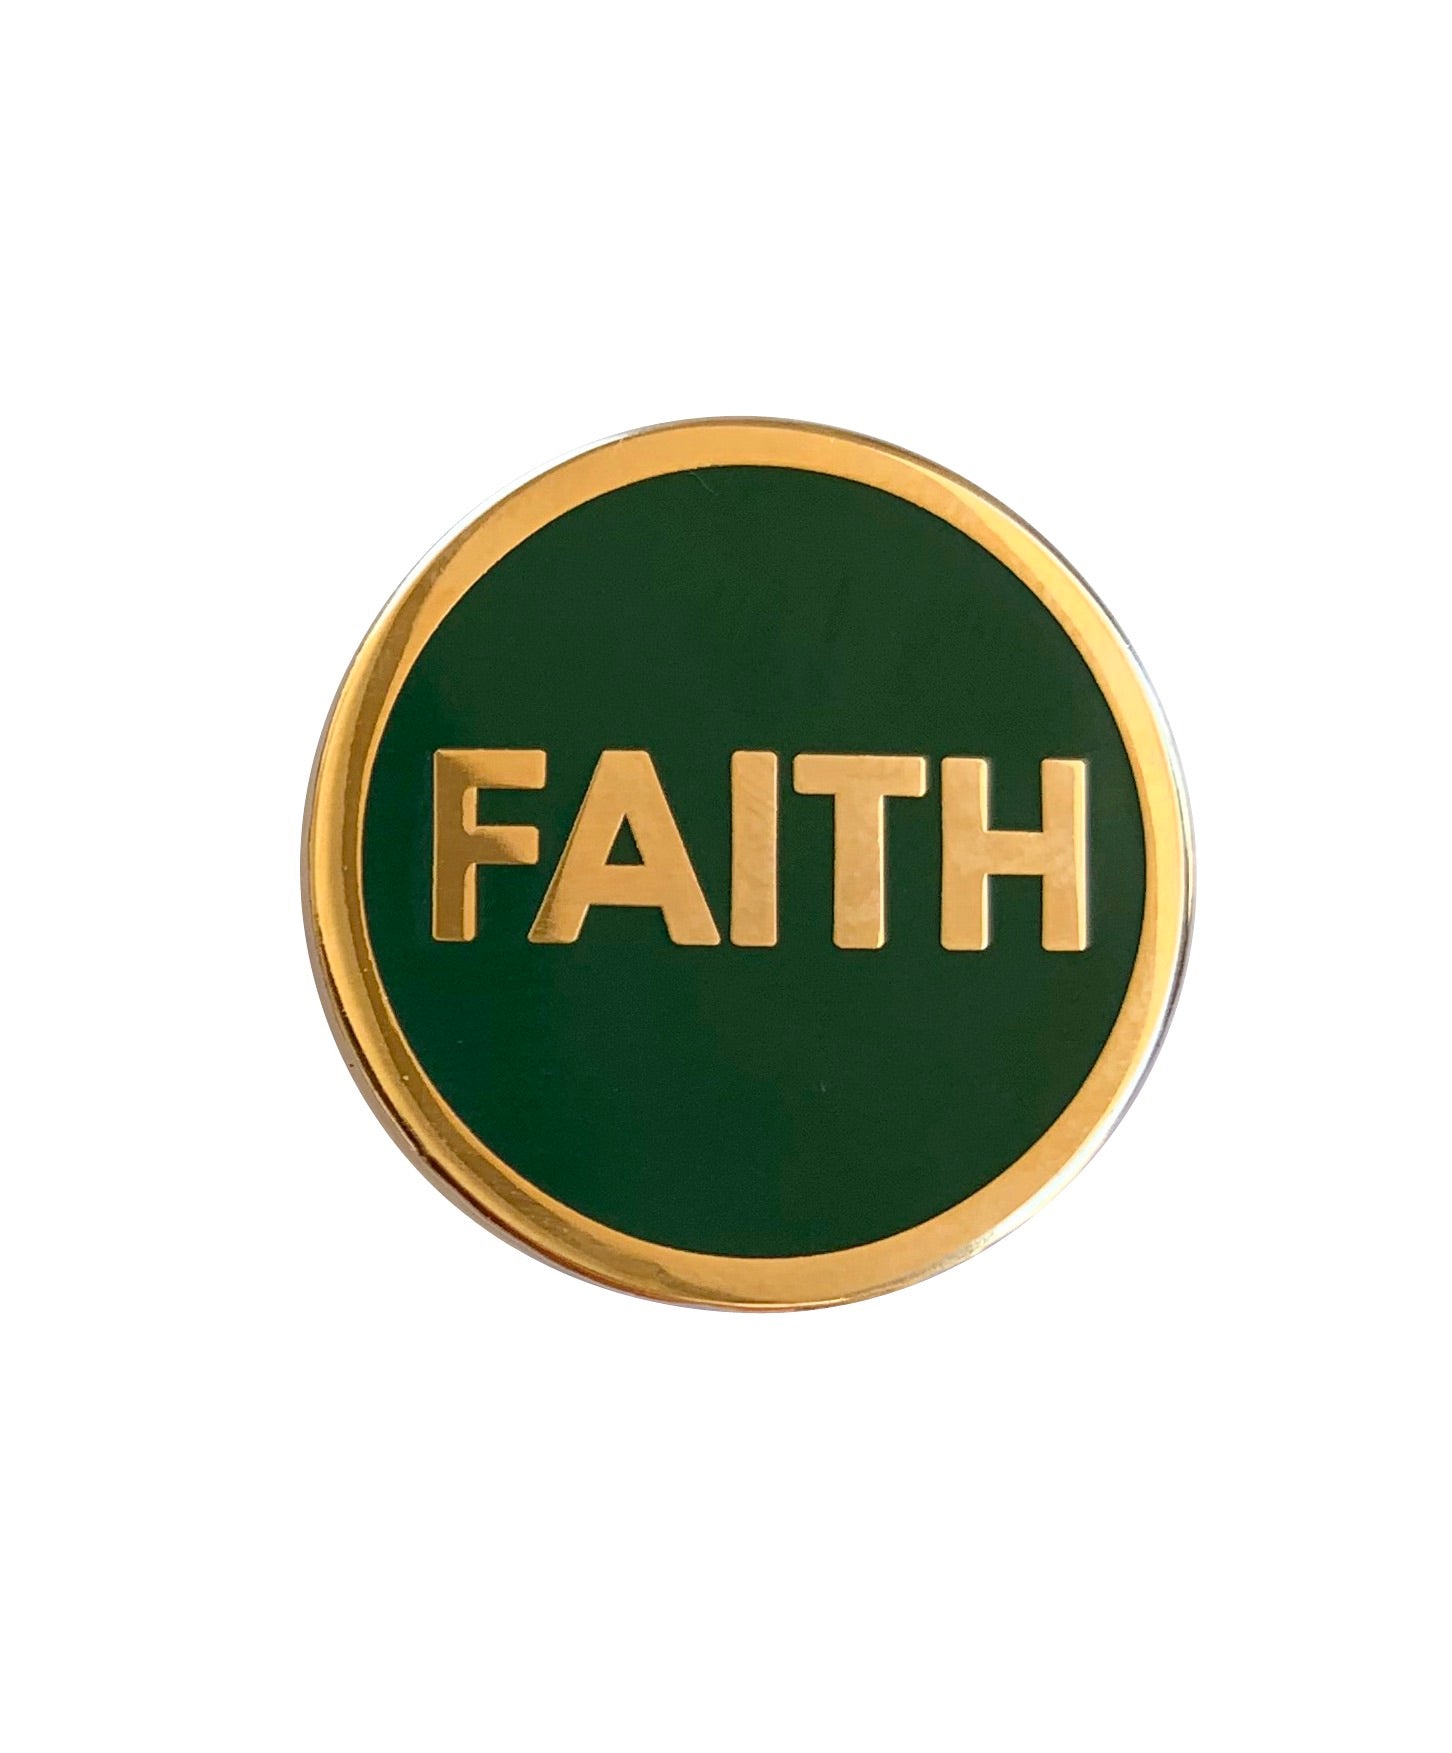 Pin on Faith